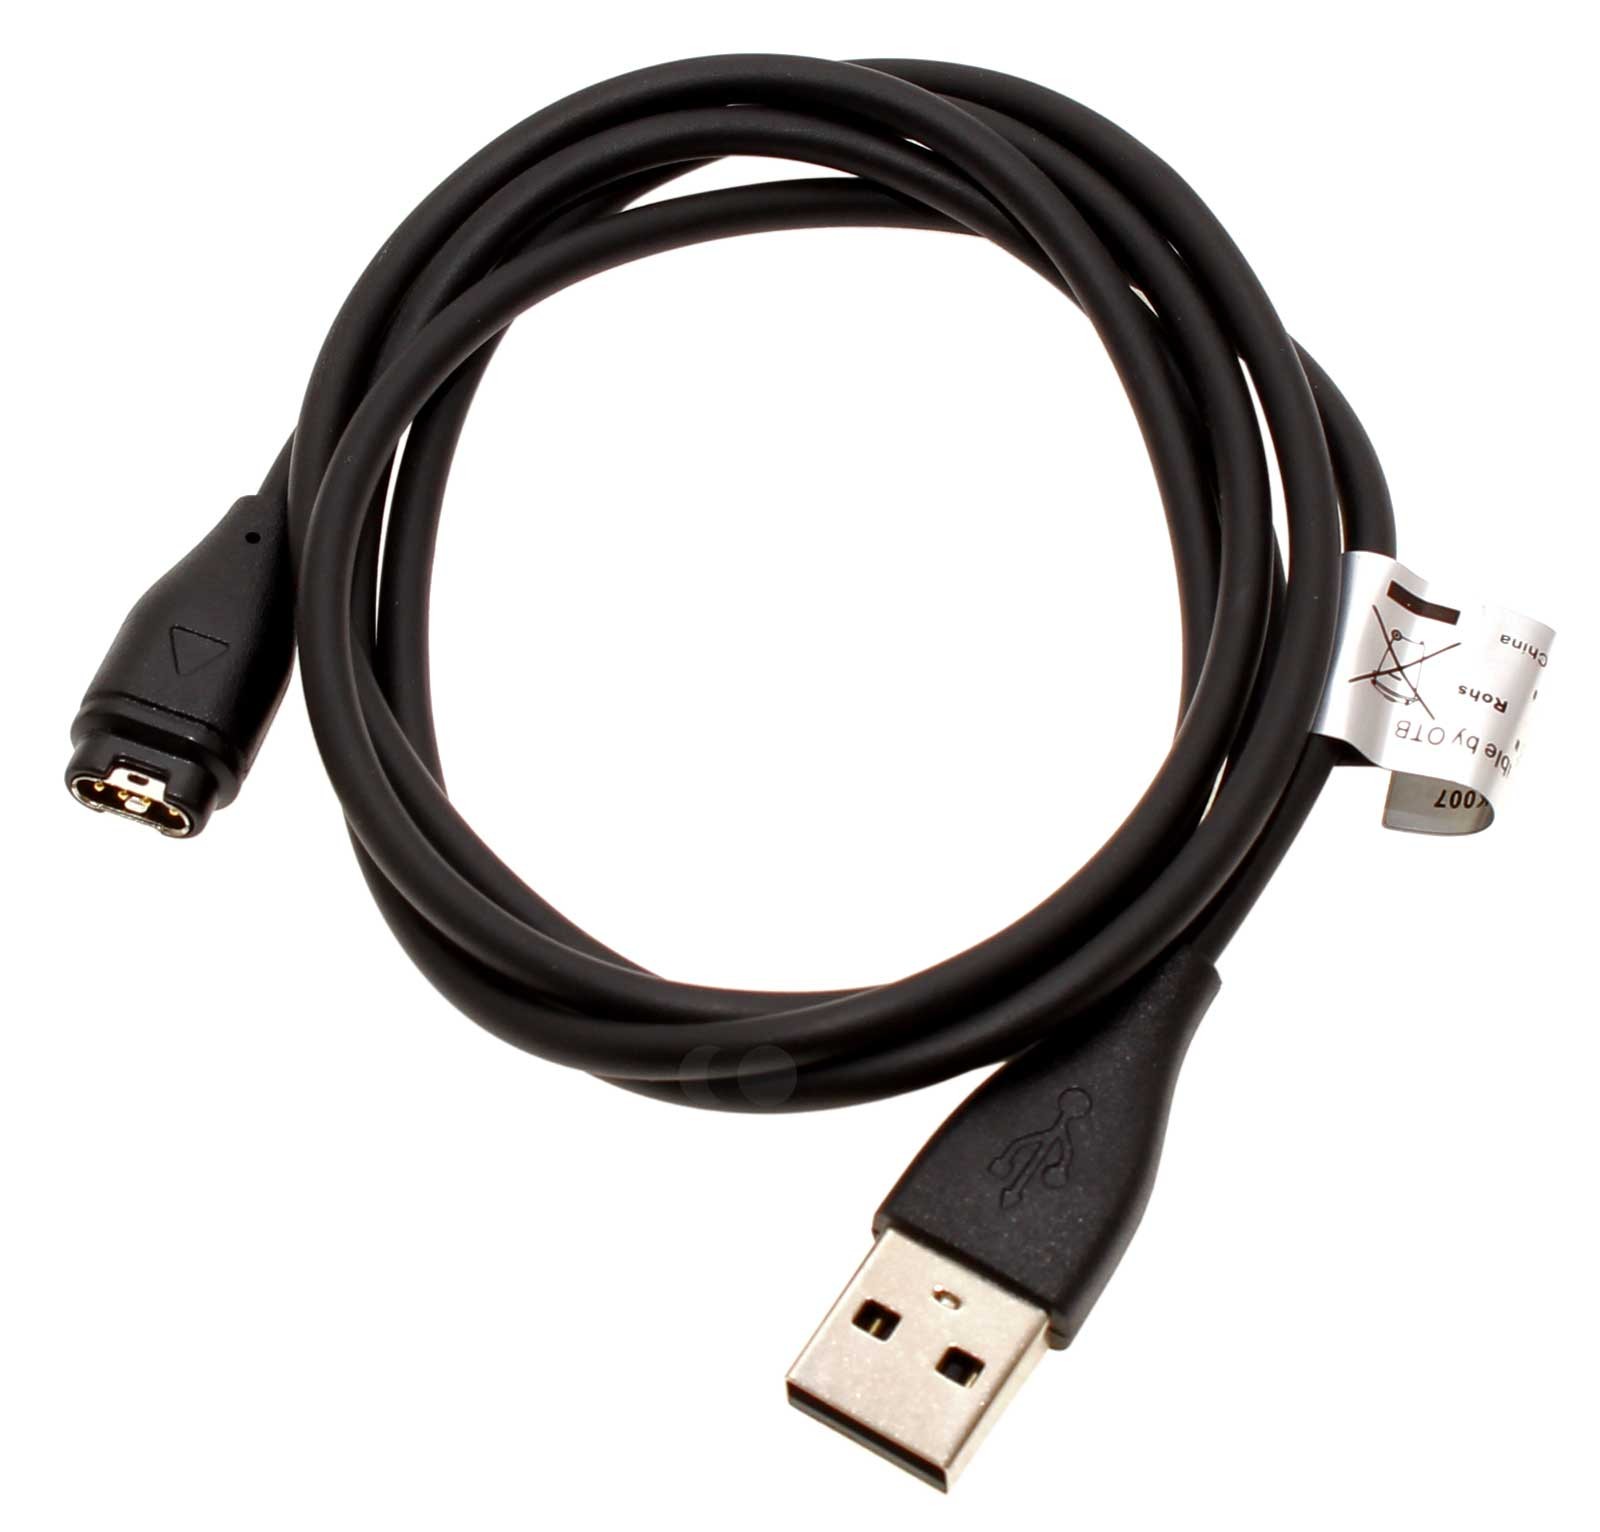 USB Ladekabel, Datenkabel zum Laden und Daten übertragen von Garmin Fitness-Smartwatches, Fitness-Tracker über einen USB-Anschluss